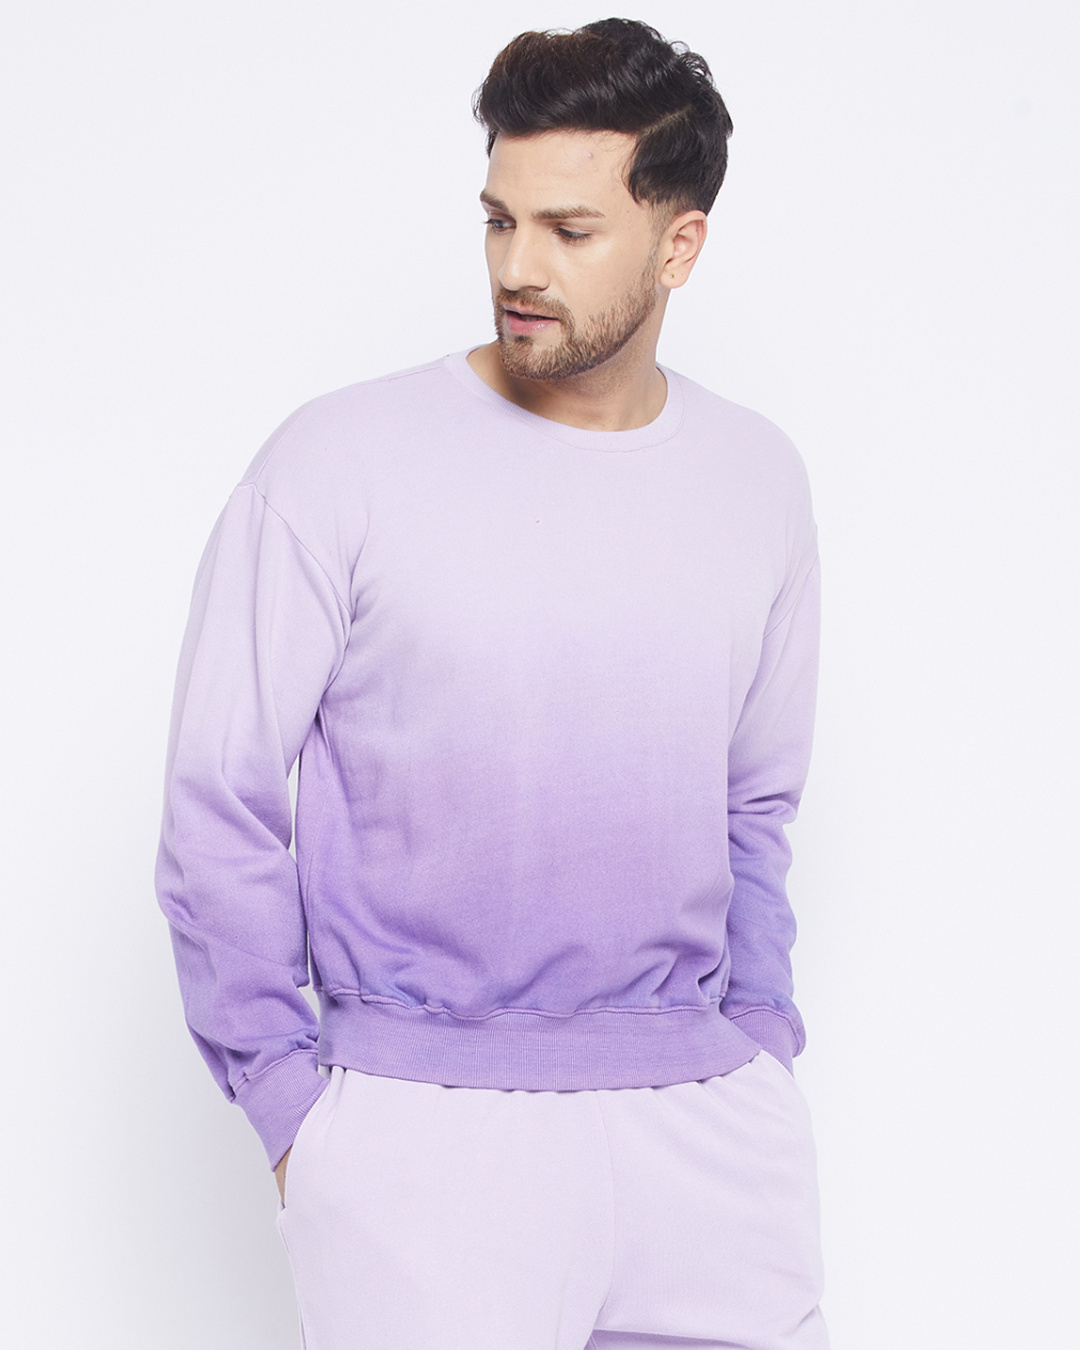 Buy Men's Lavender Cotton Ombre Oversized Sweatshirt Online at Bewakoof